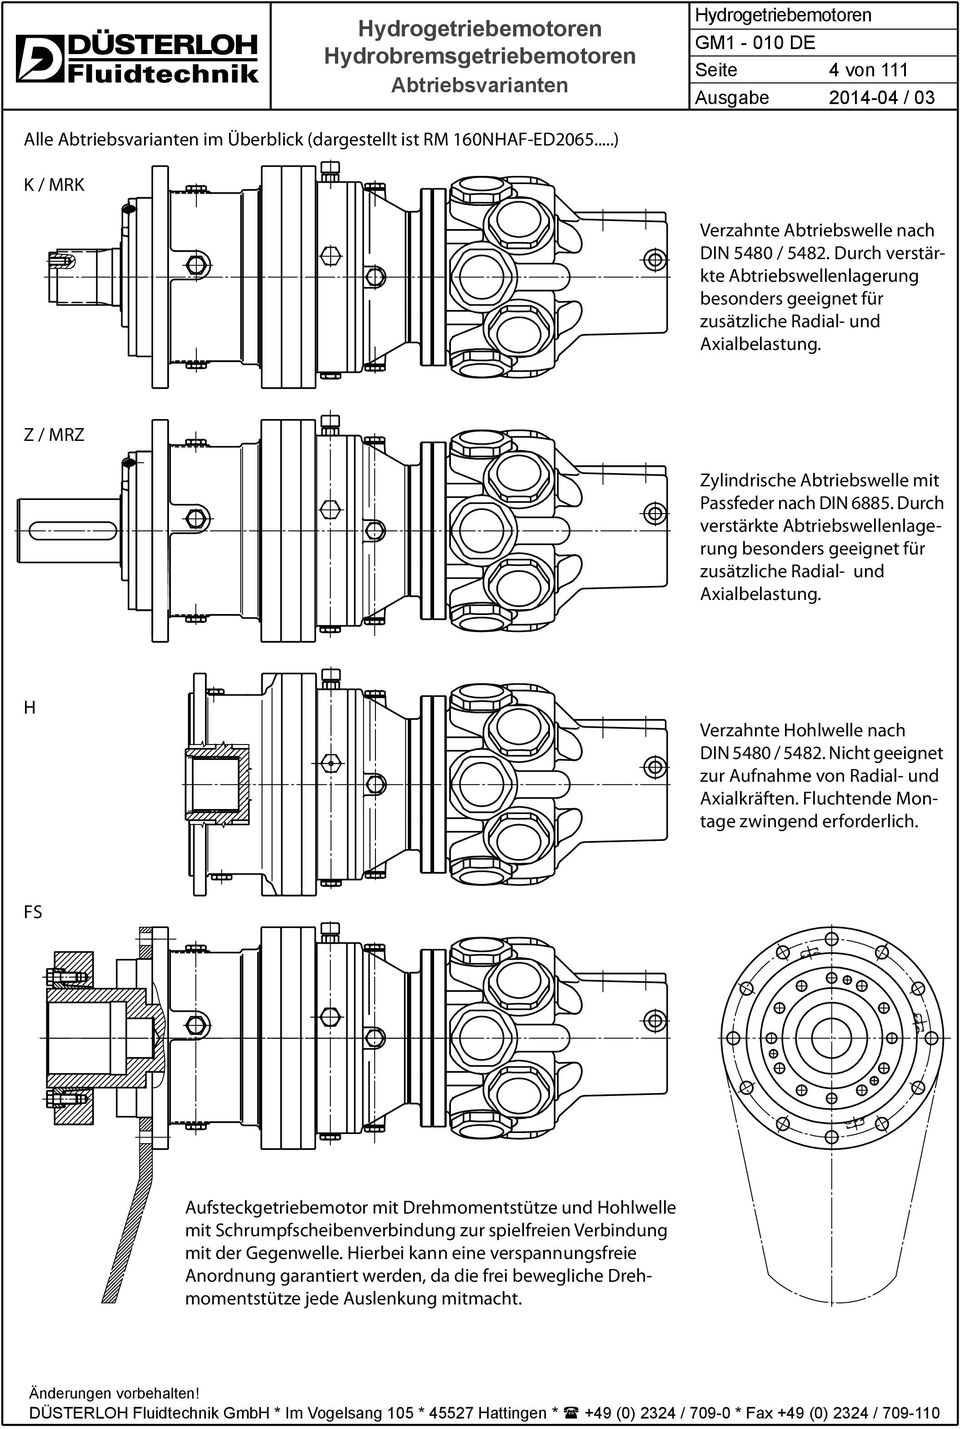 Durch verstärkte Abtriebswellenlagerung besonders geeignet für zusätzliche Radial- und Axialbelastung. H Verzahnte Hohlwelle nach DIN 5480 / 5482.